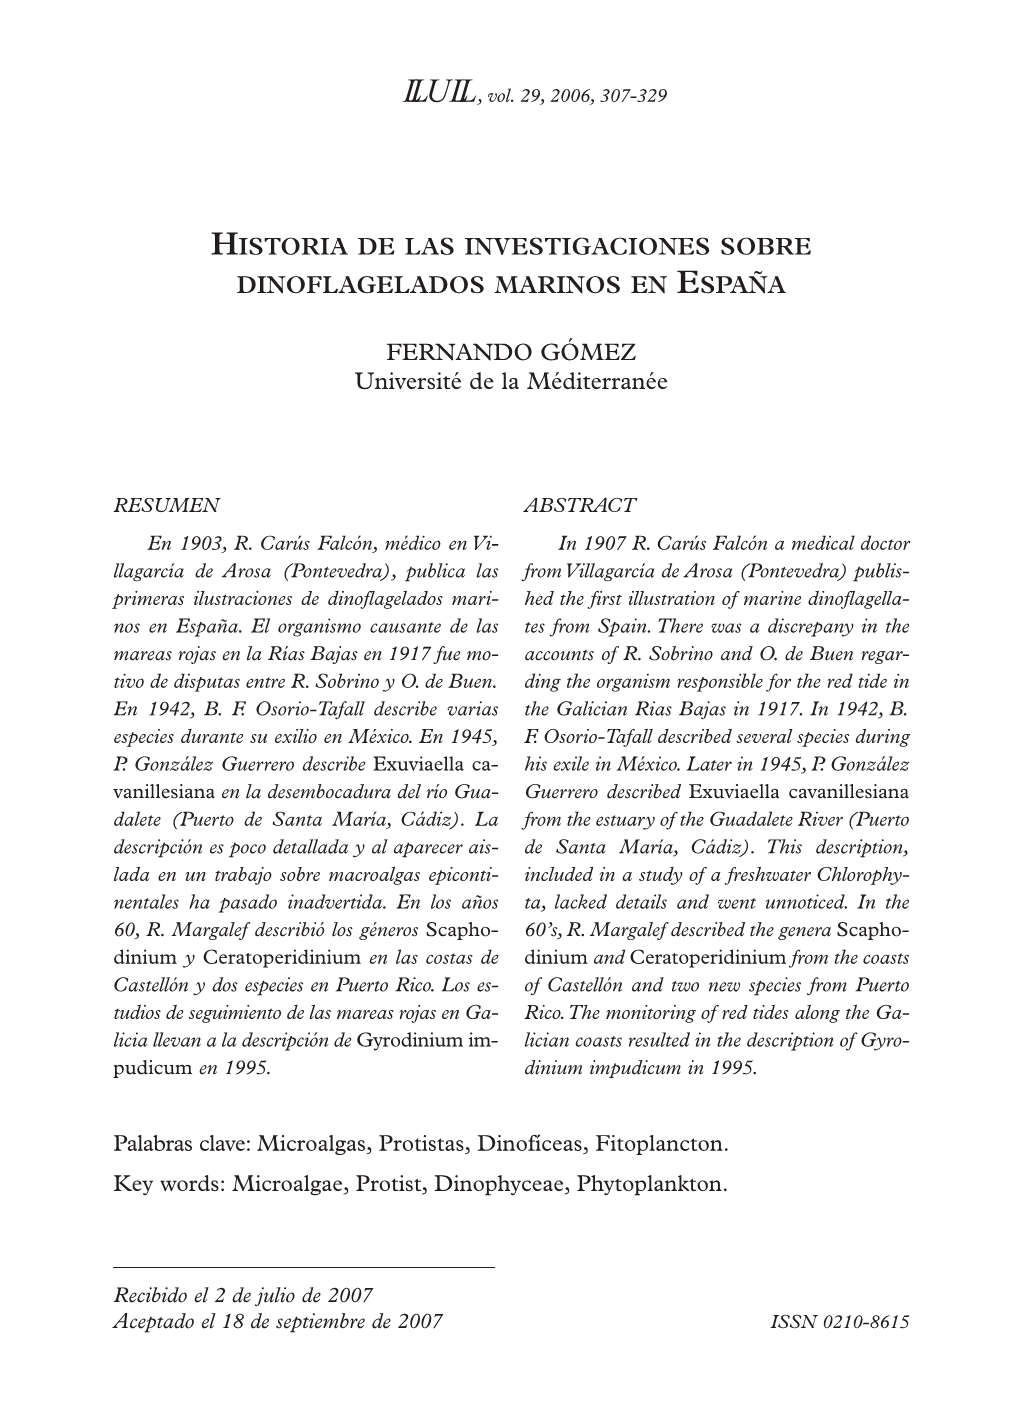 HISTORIA DE LAS INVESTIGACIONES SOBRE DINOFLAGELADOS MARINOS EN ESPAÑA FERNANDO GÓMEZ Université De La Méditerranée